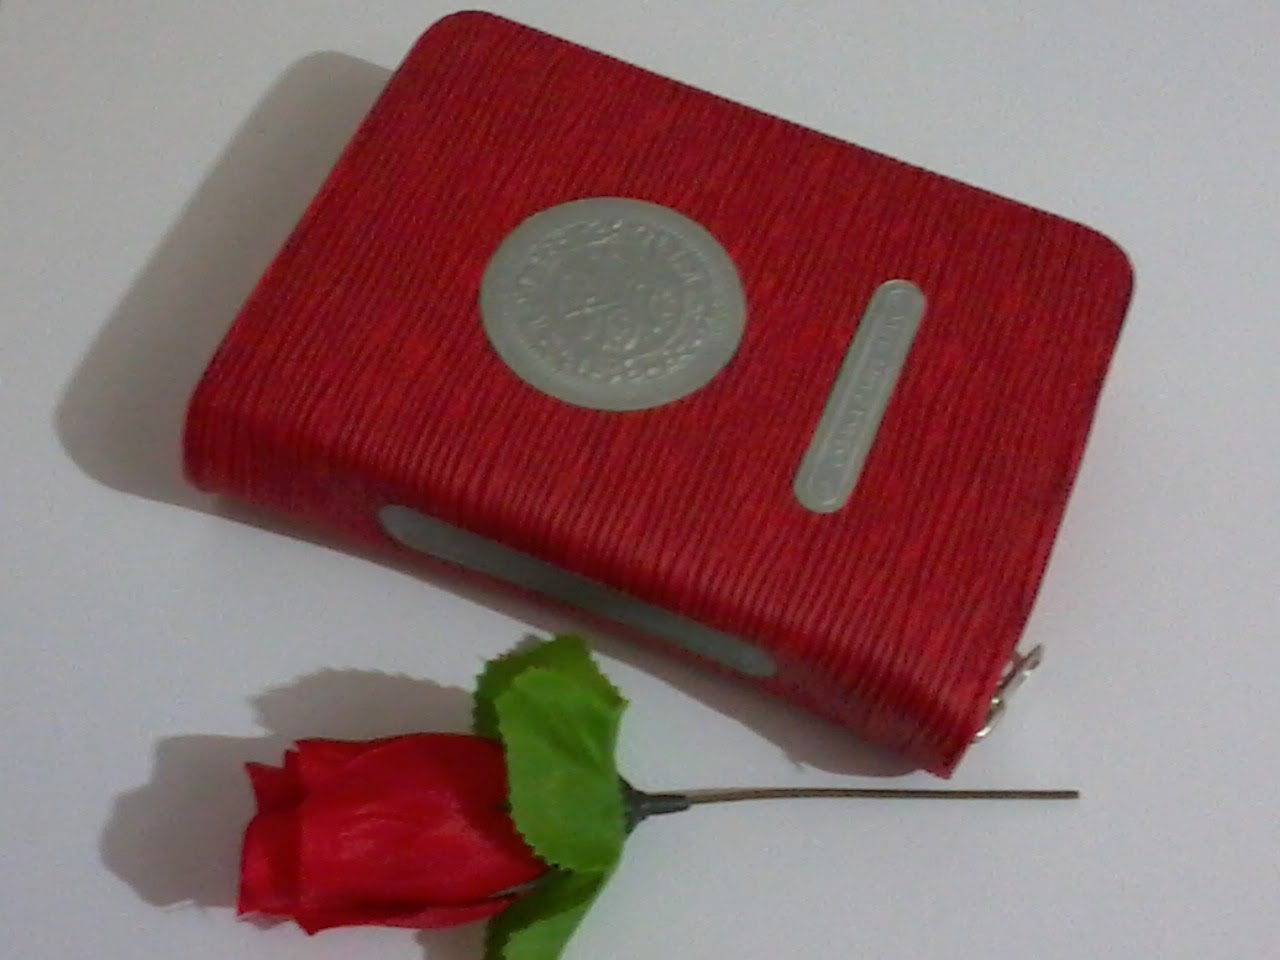 my Quran + Rose